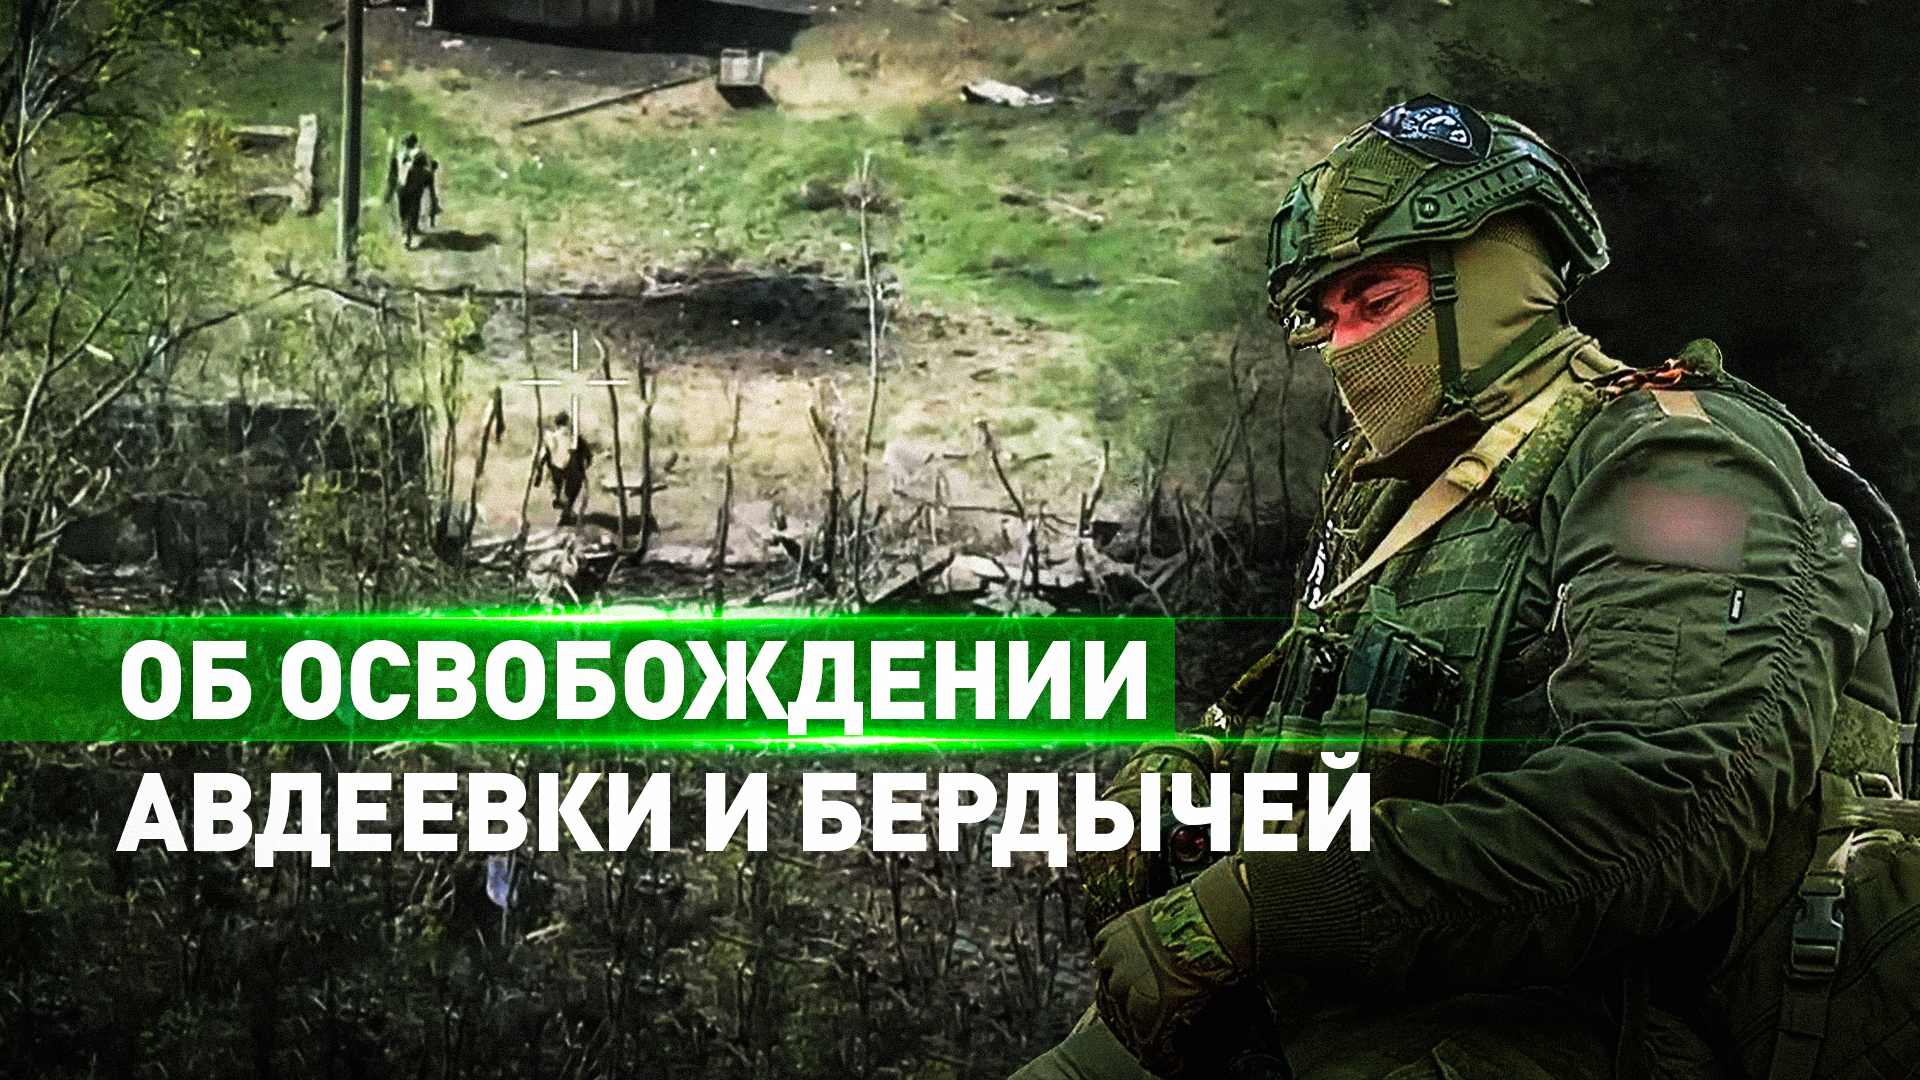 Бойцы штурмроты рассказали об освобождении Авдеевки и Бердычей — видео